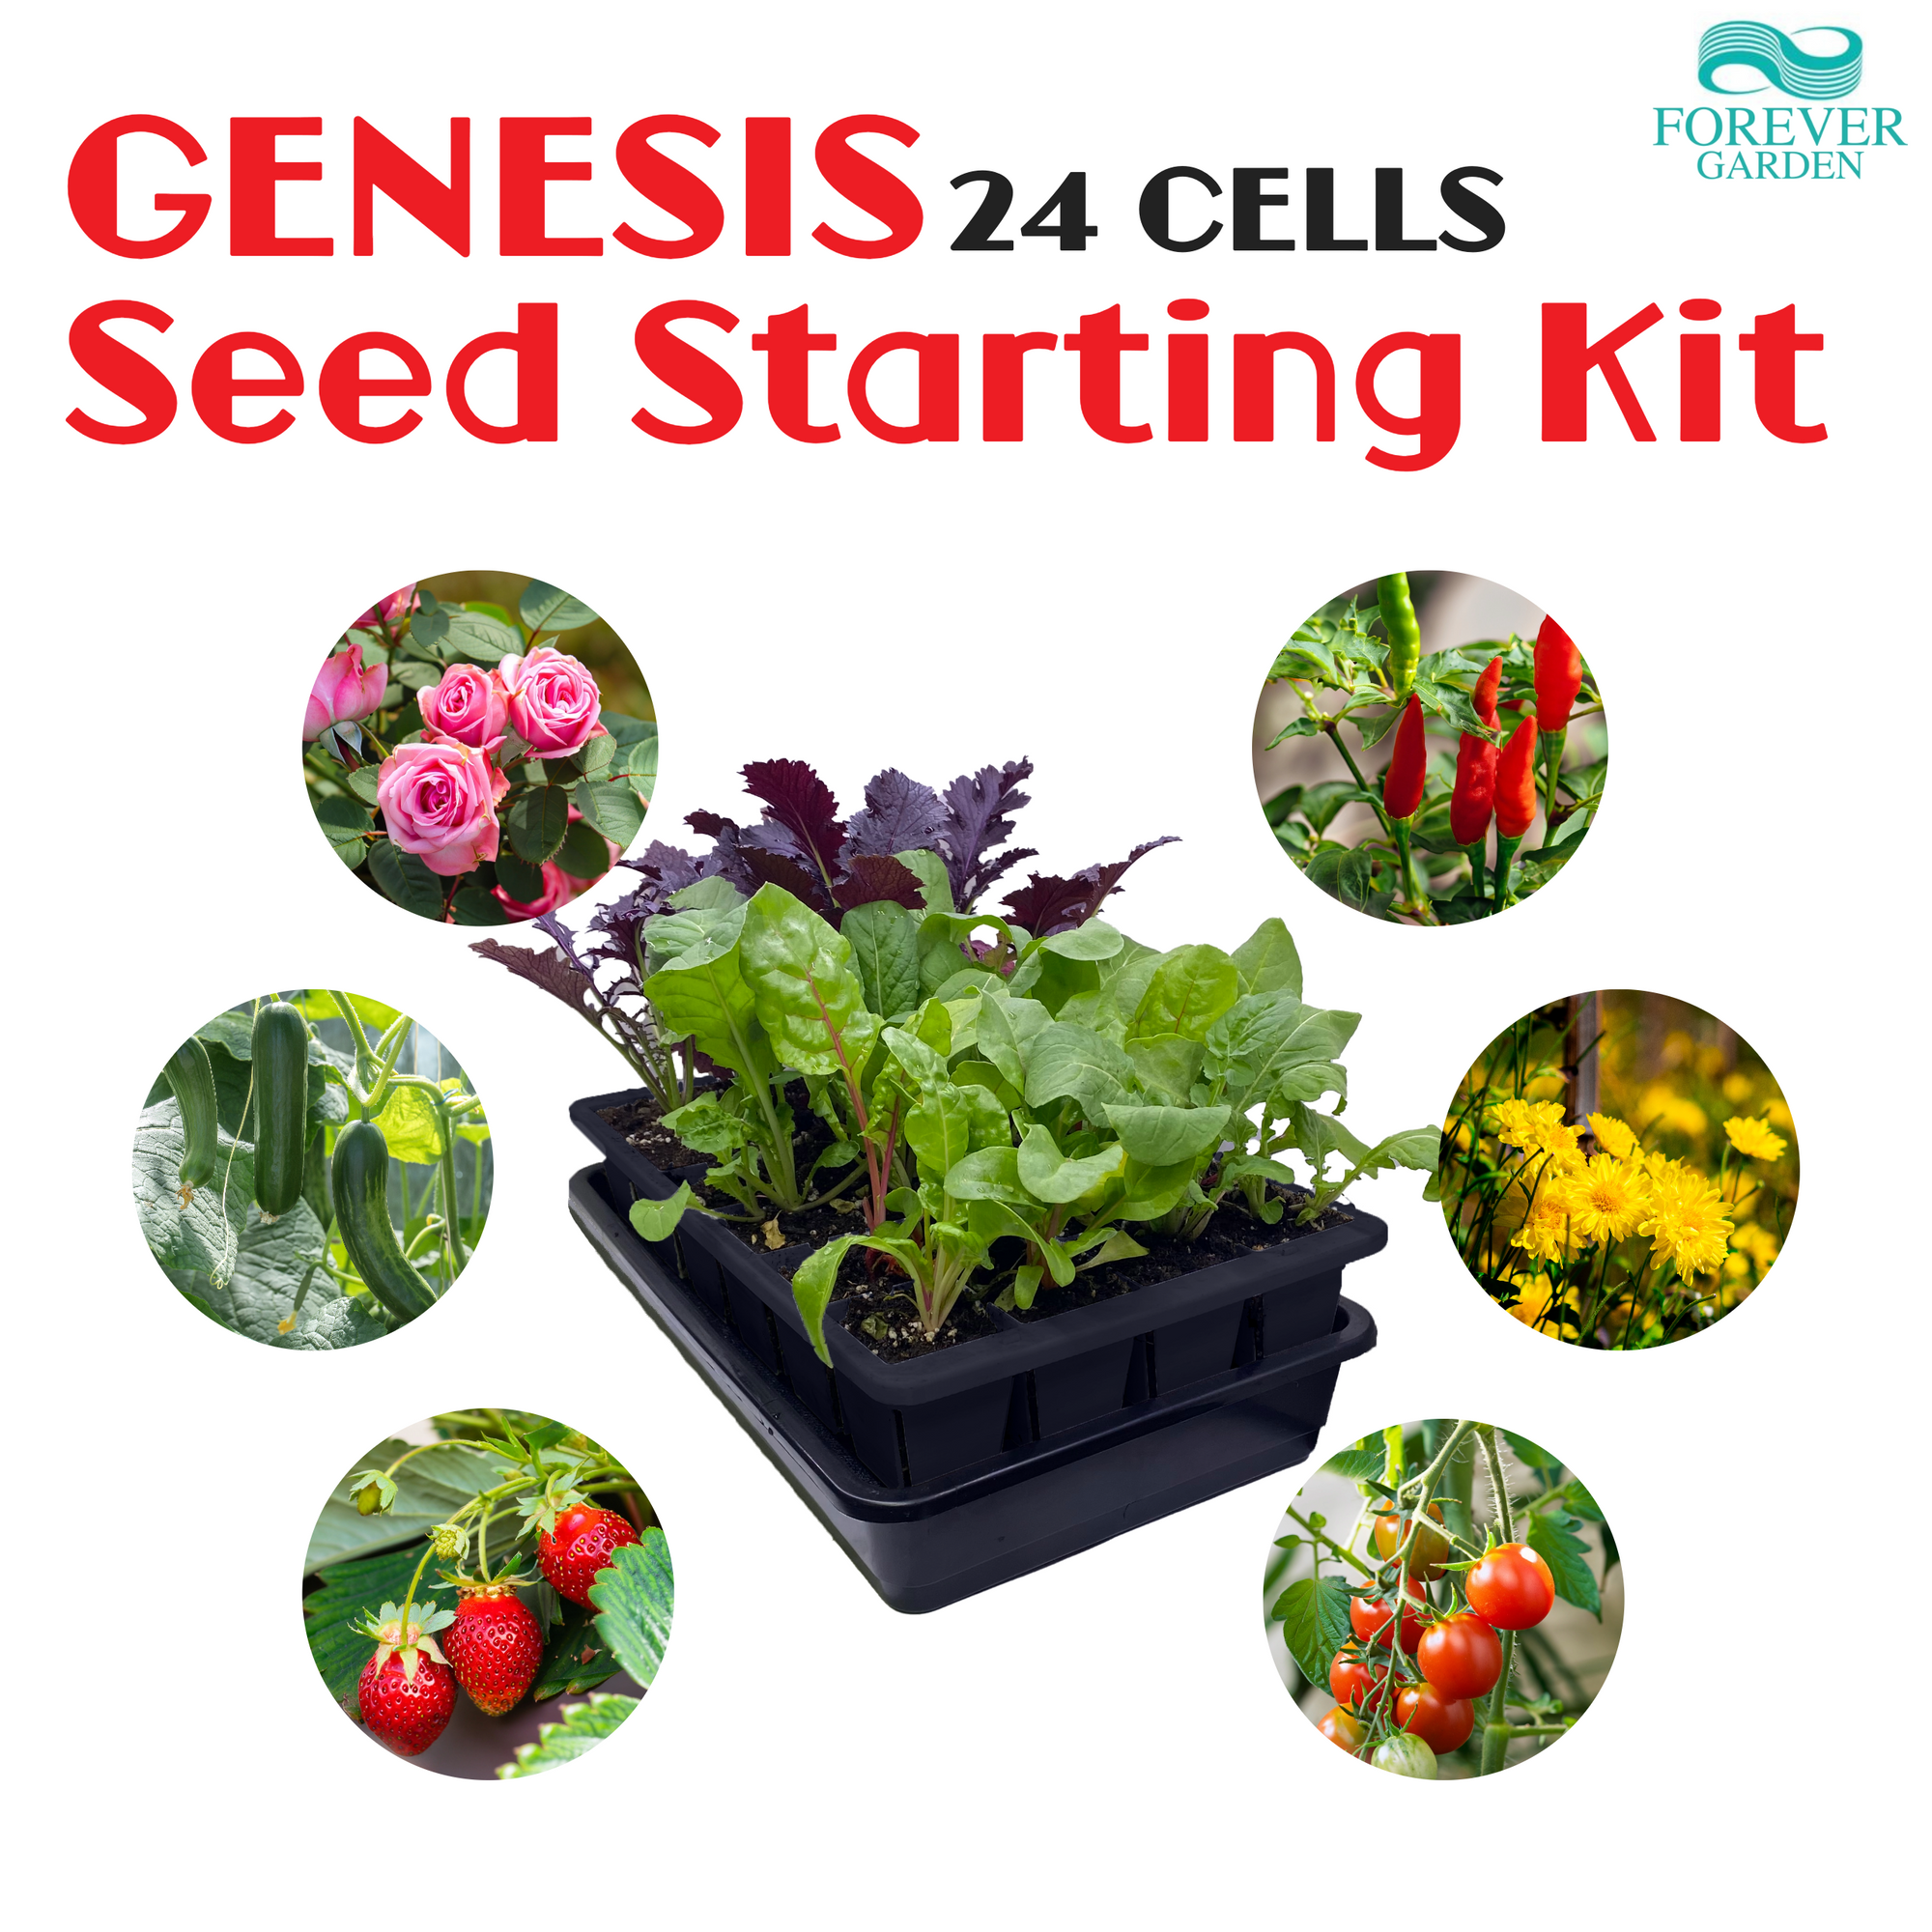 GENESIS Self-Watering Seed Starter